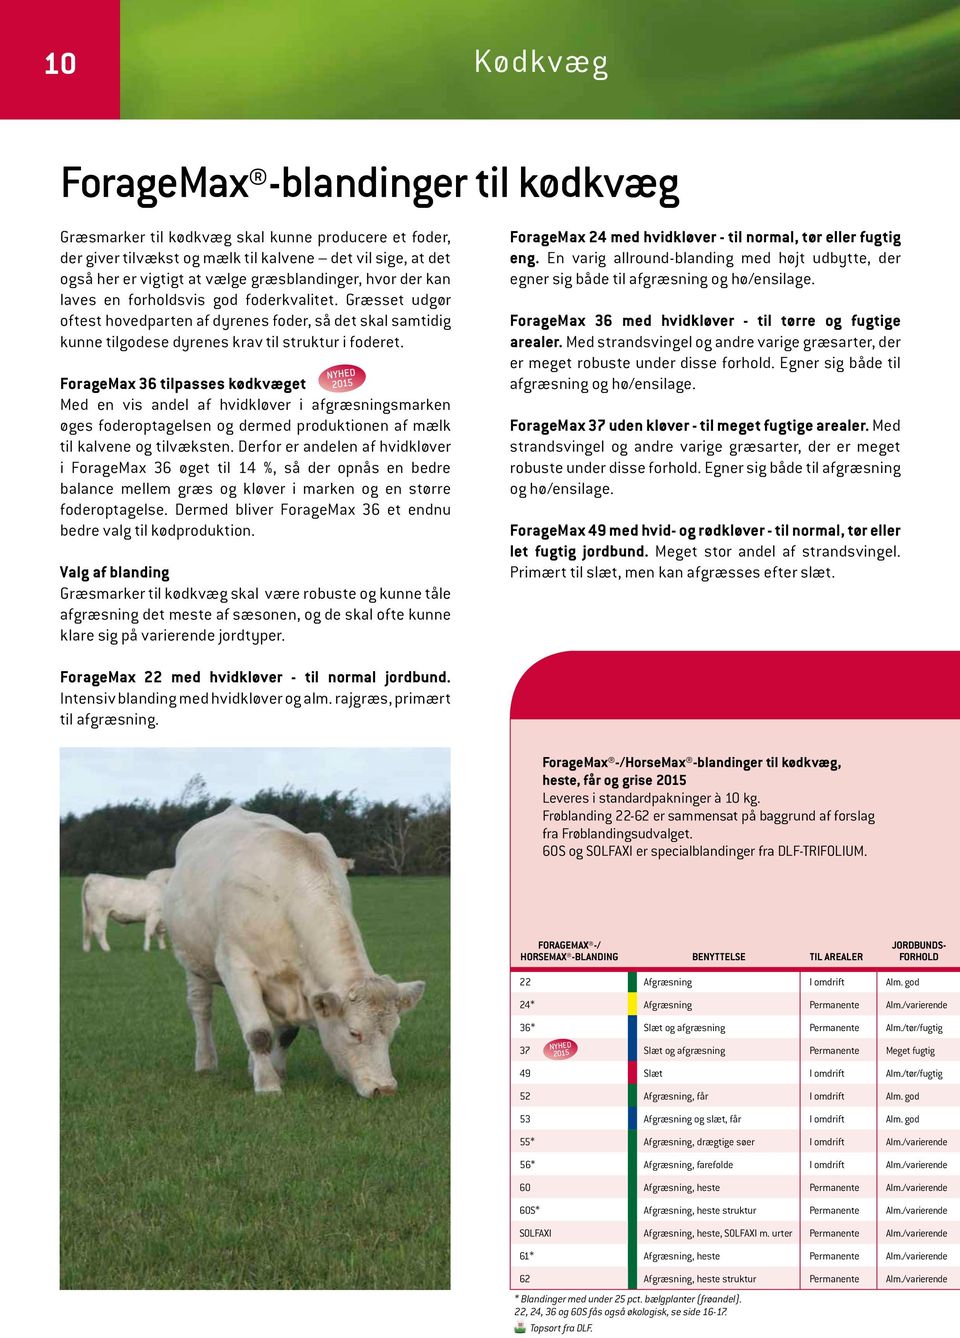 ForageMax 36 tilpasses kødkvæget Med en vis andel af hvidkløver i afgræsningsmarken øges foderoptagelsen og dermed produktionen af mælk til kalvene og tilvæksten.